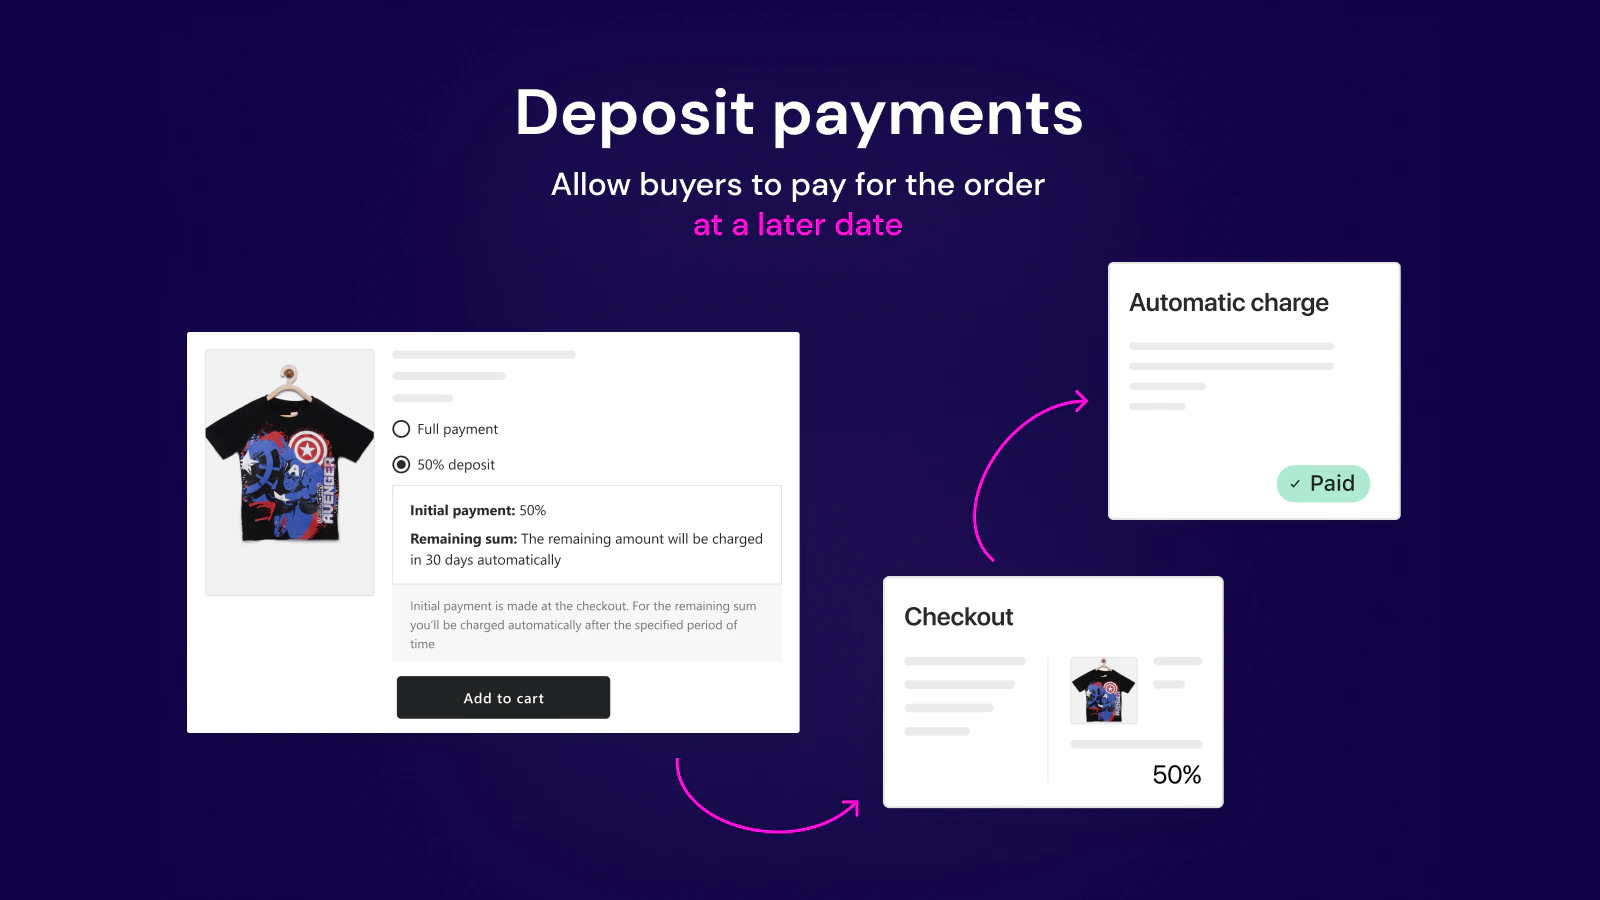 split-payment-deposit-spurit-app-automatic-charge